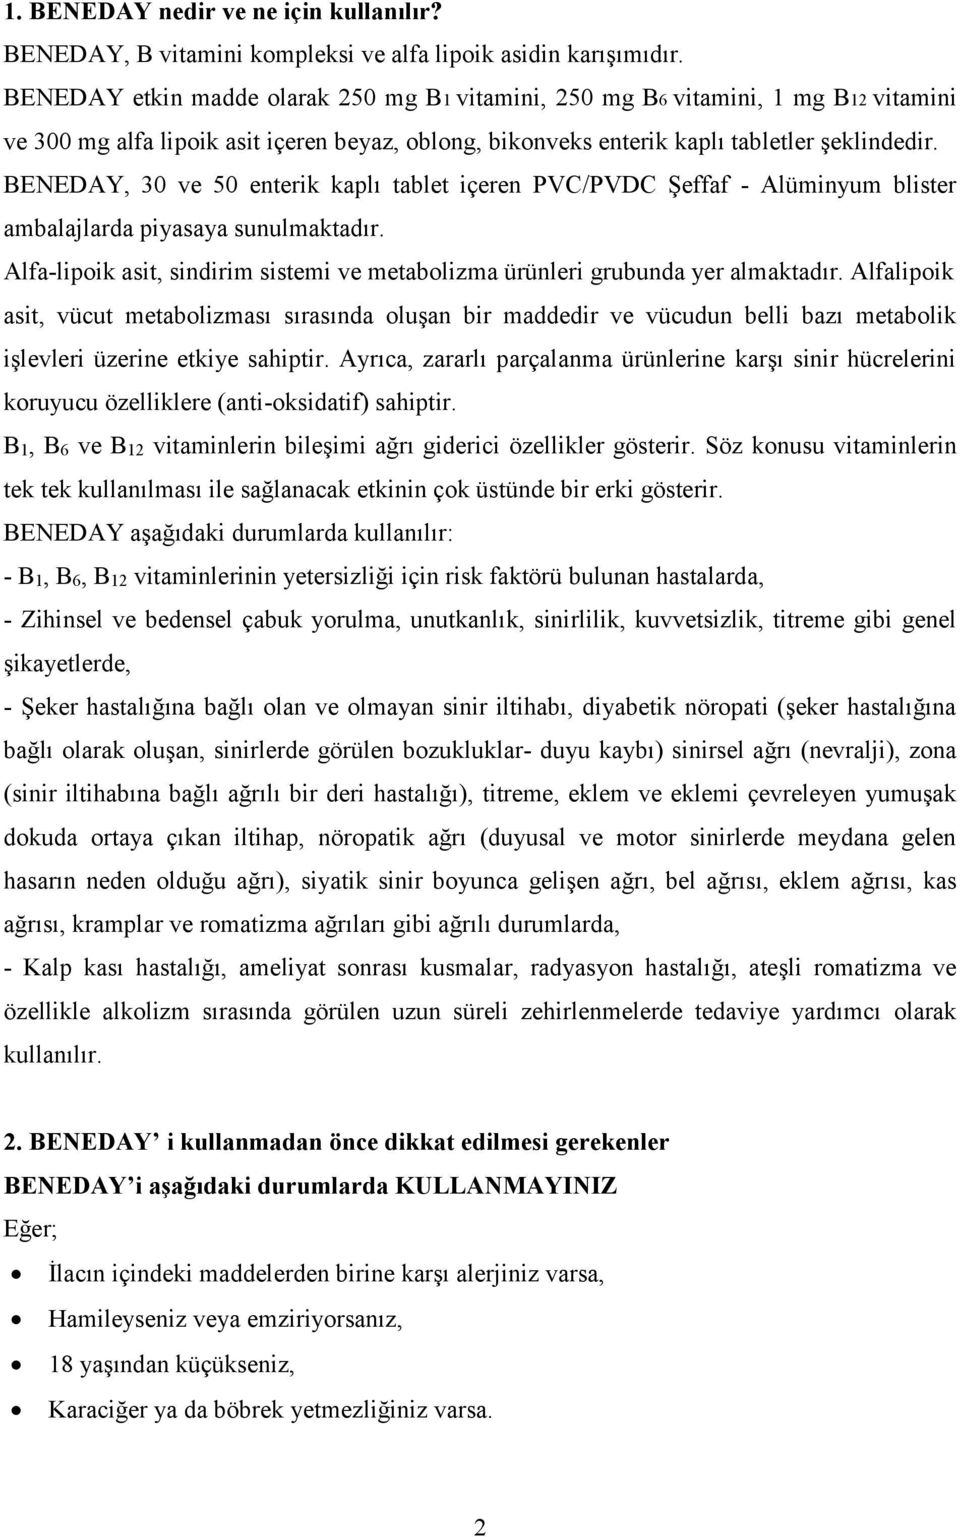 Kullanma Talimati Beneday 250 250 1 300 Mg Enterik Kapli Tablet Agiz Yoluyla Alinir Pdf Ucretsiz Indirin